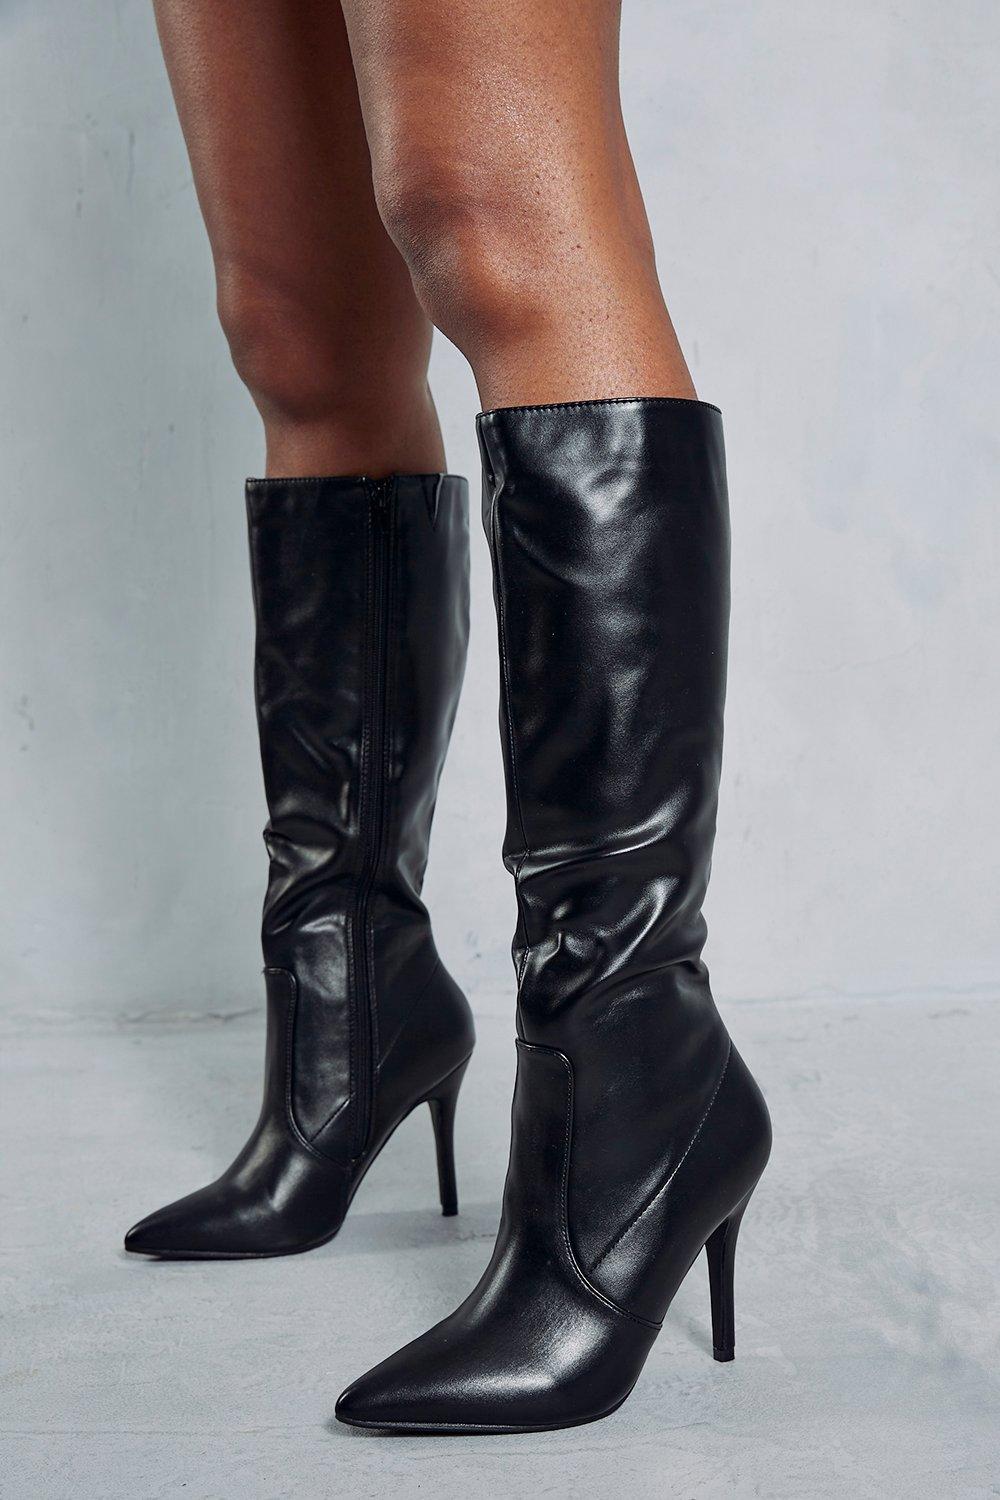 Кожаные сапоги до колена с острым носком MISSPAP, черный женские кожаные сапоги на шпильке черные сапоги выше колена с острым носком и боковой молнией 2024